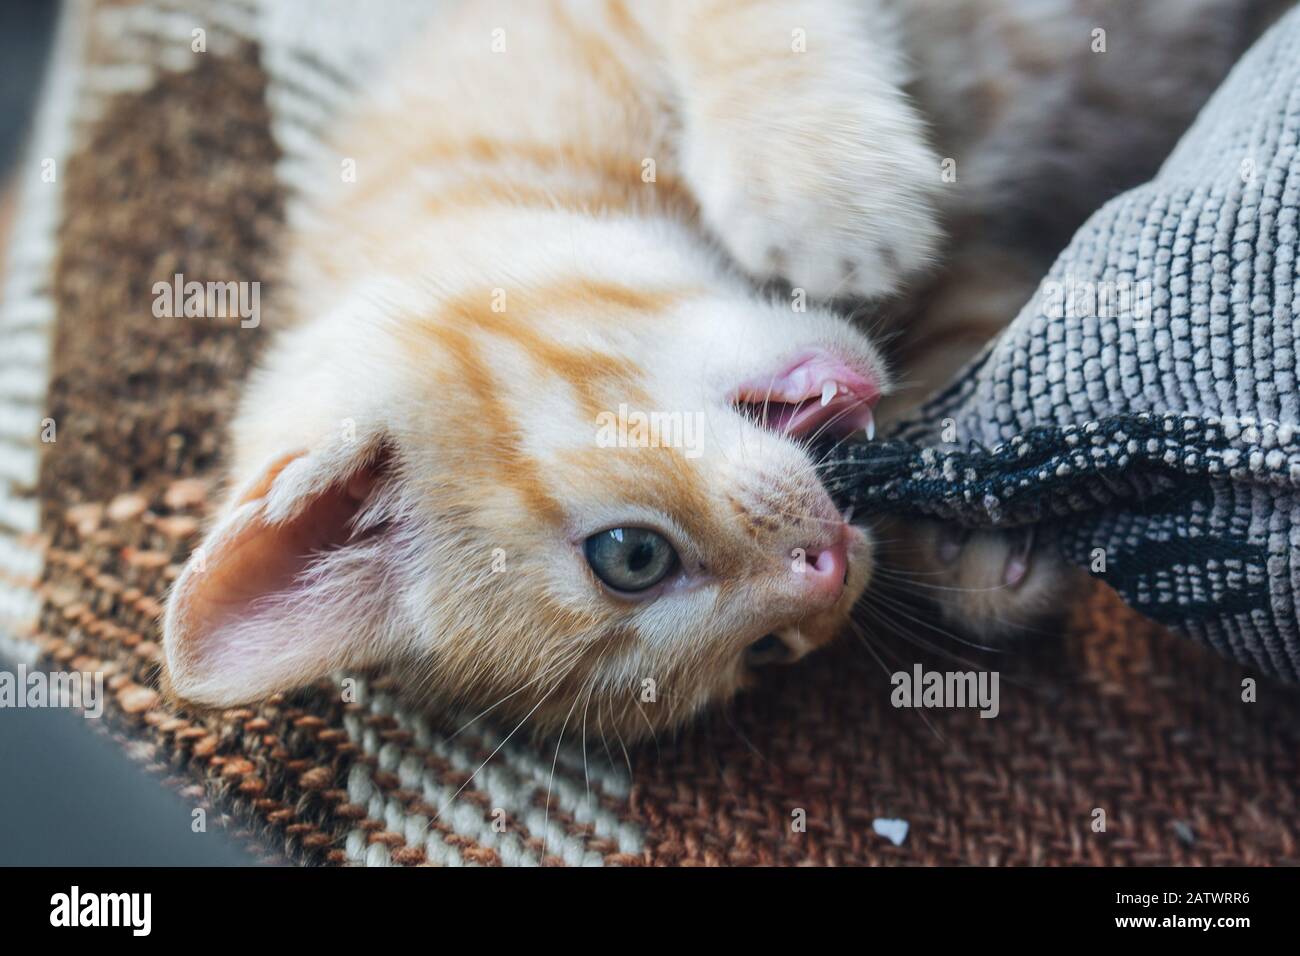 Little orange blue eyed cat Stock Photo